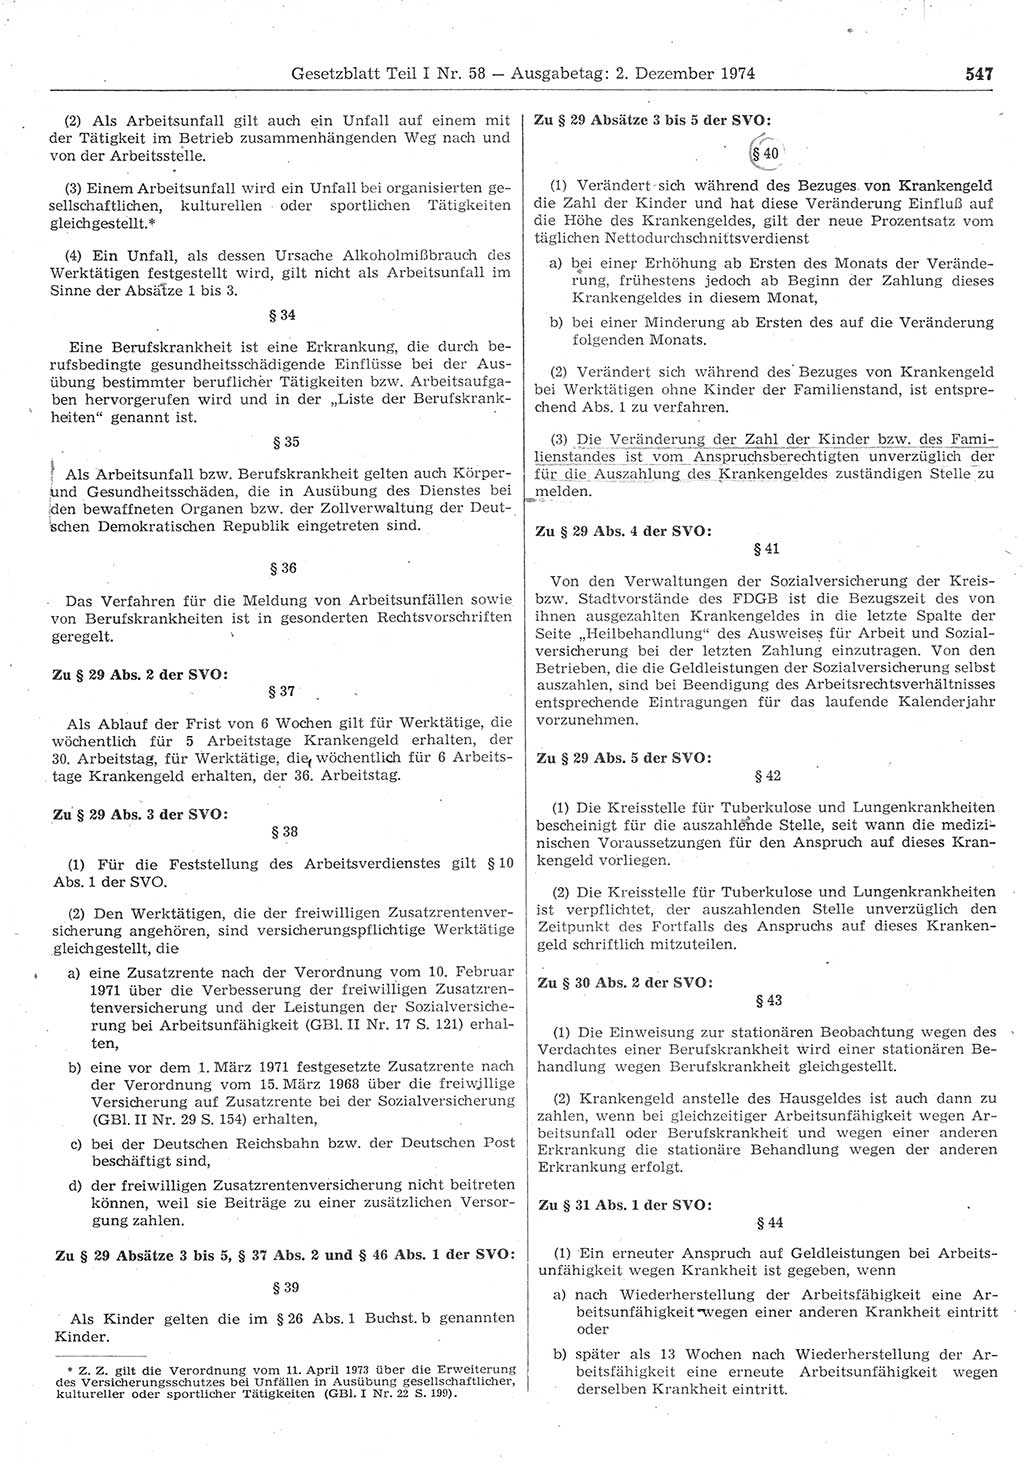 Gesetzblatt (GBl.) der Deutschen Demokratischen Republik (DDR) Teil Ⅰ 1974, Seite 547 (GBl. DDR Ⅰ 1974, S. 547)